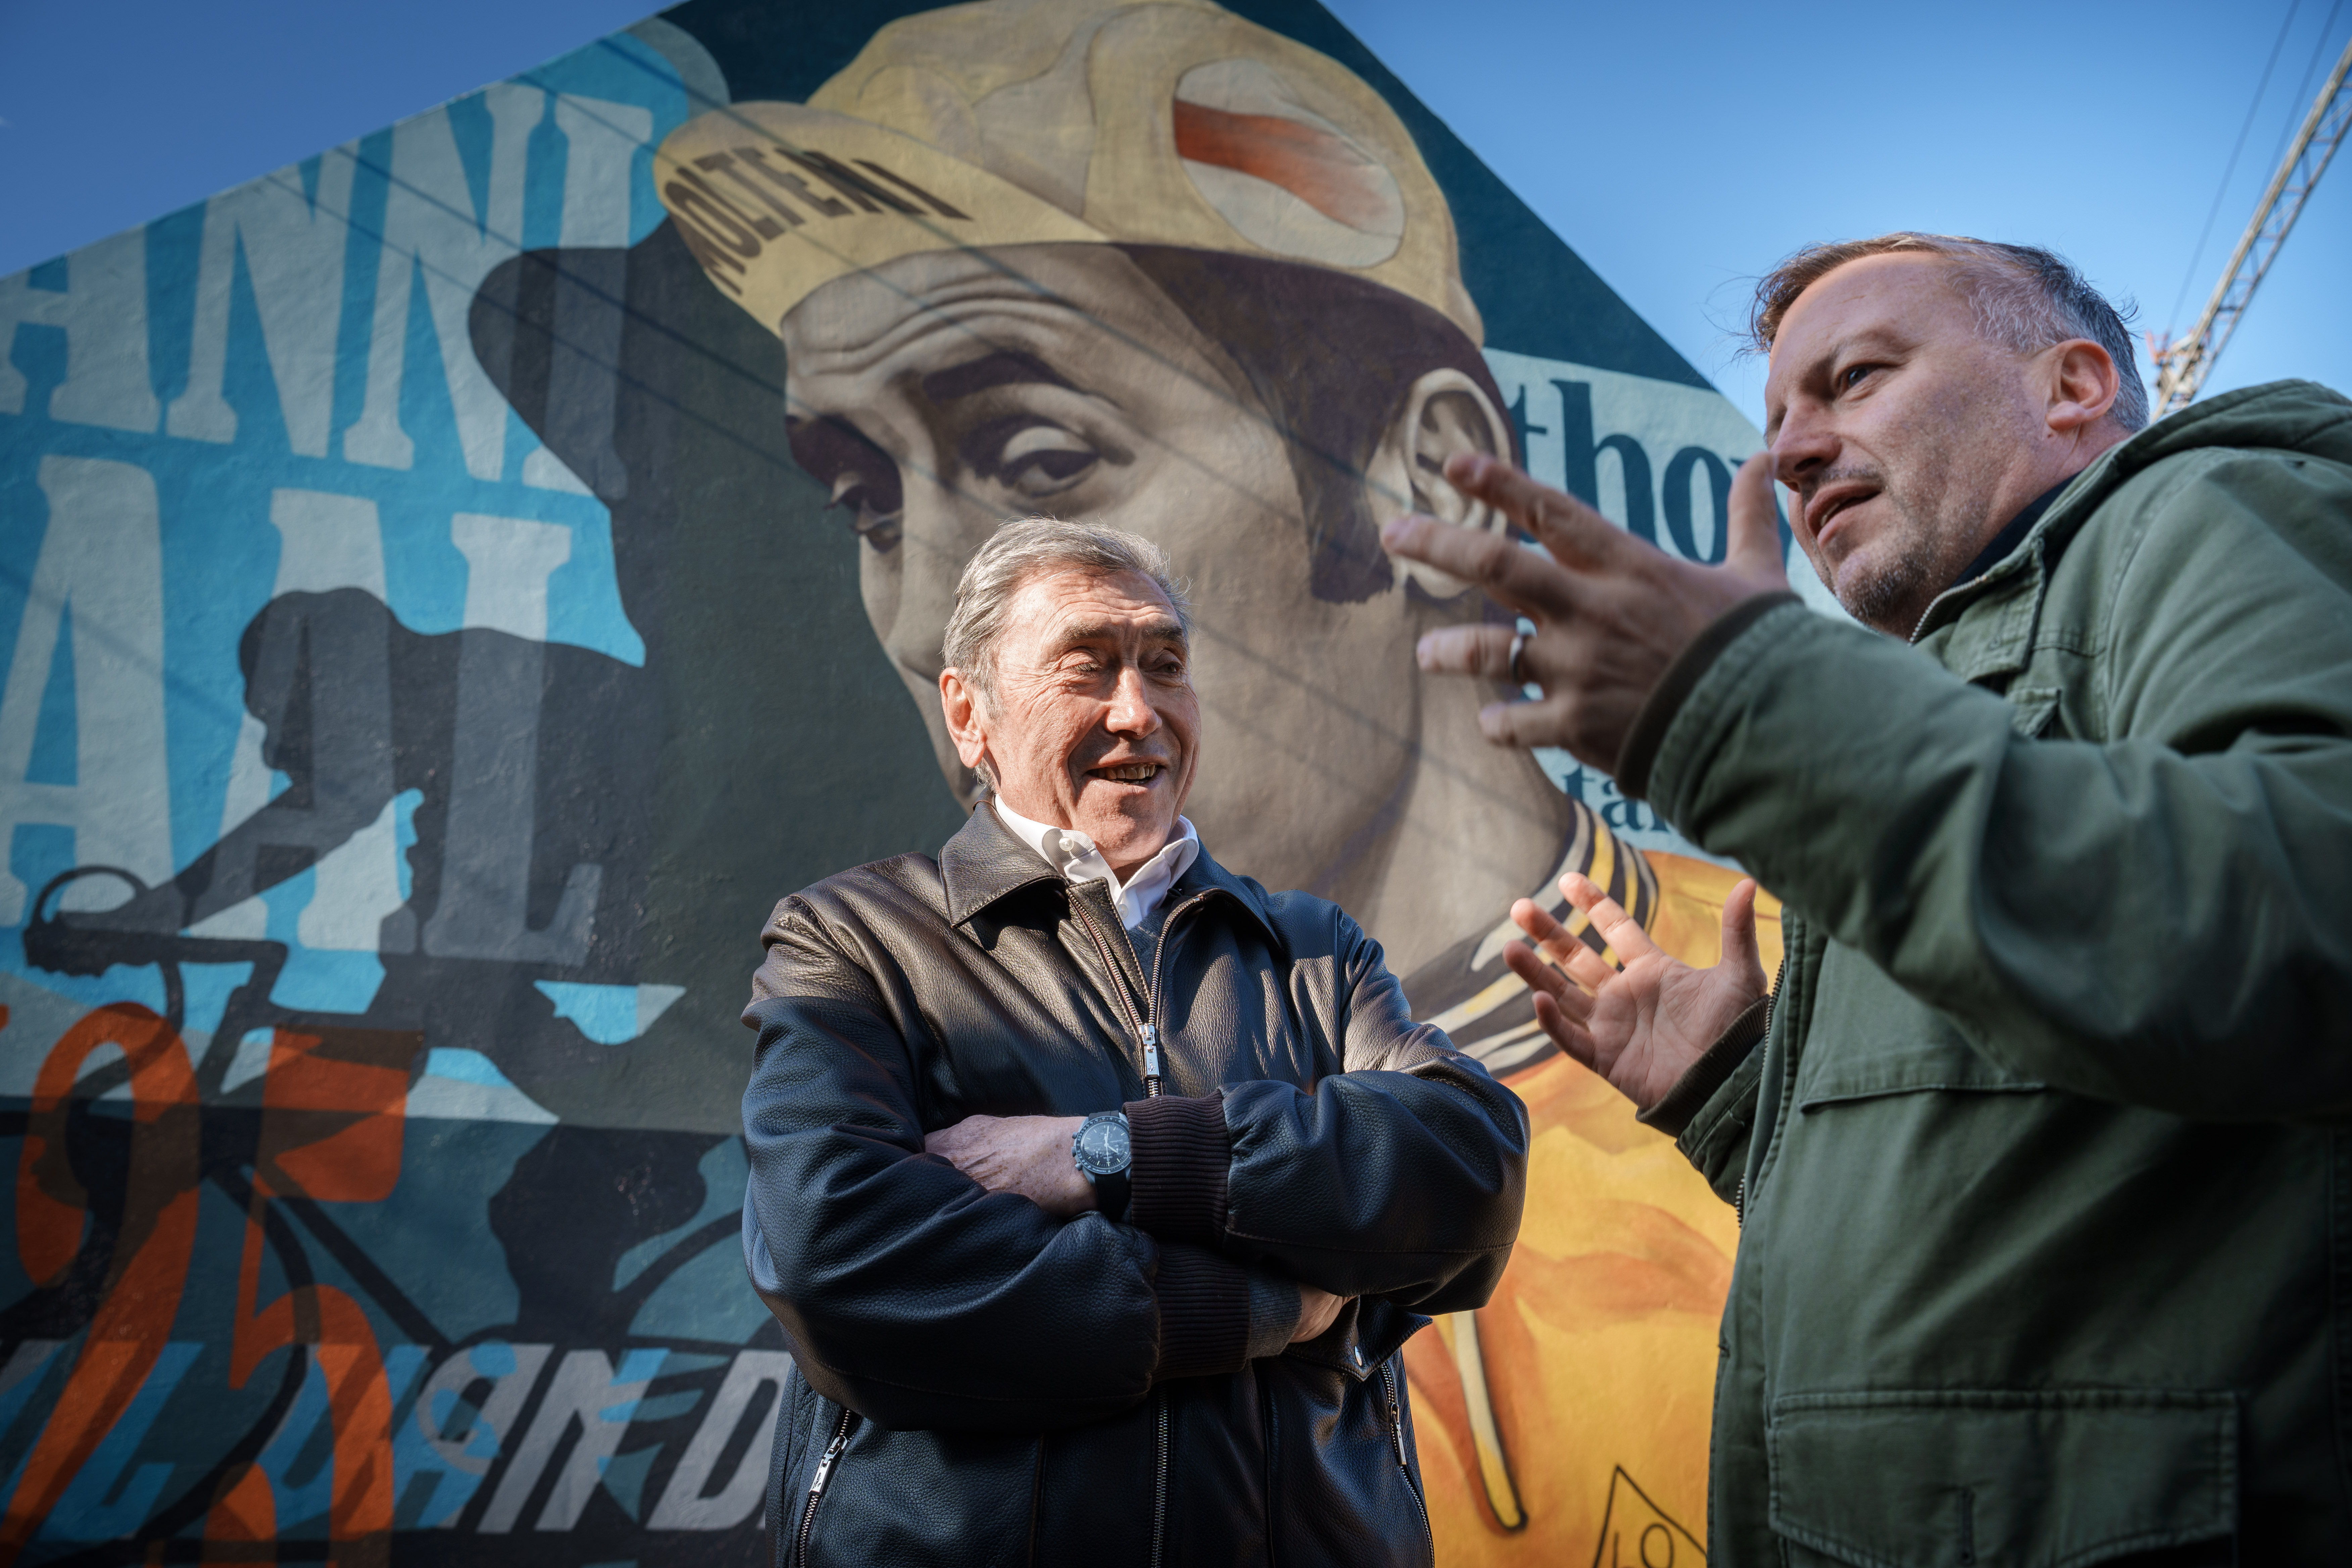 Wielerlegende Eddy Merckx is vereerd met de street art in zijn geboortedorp.